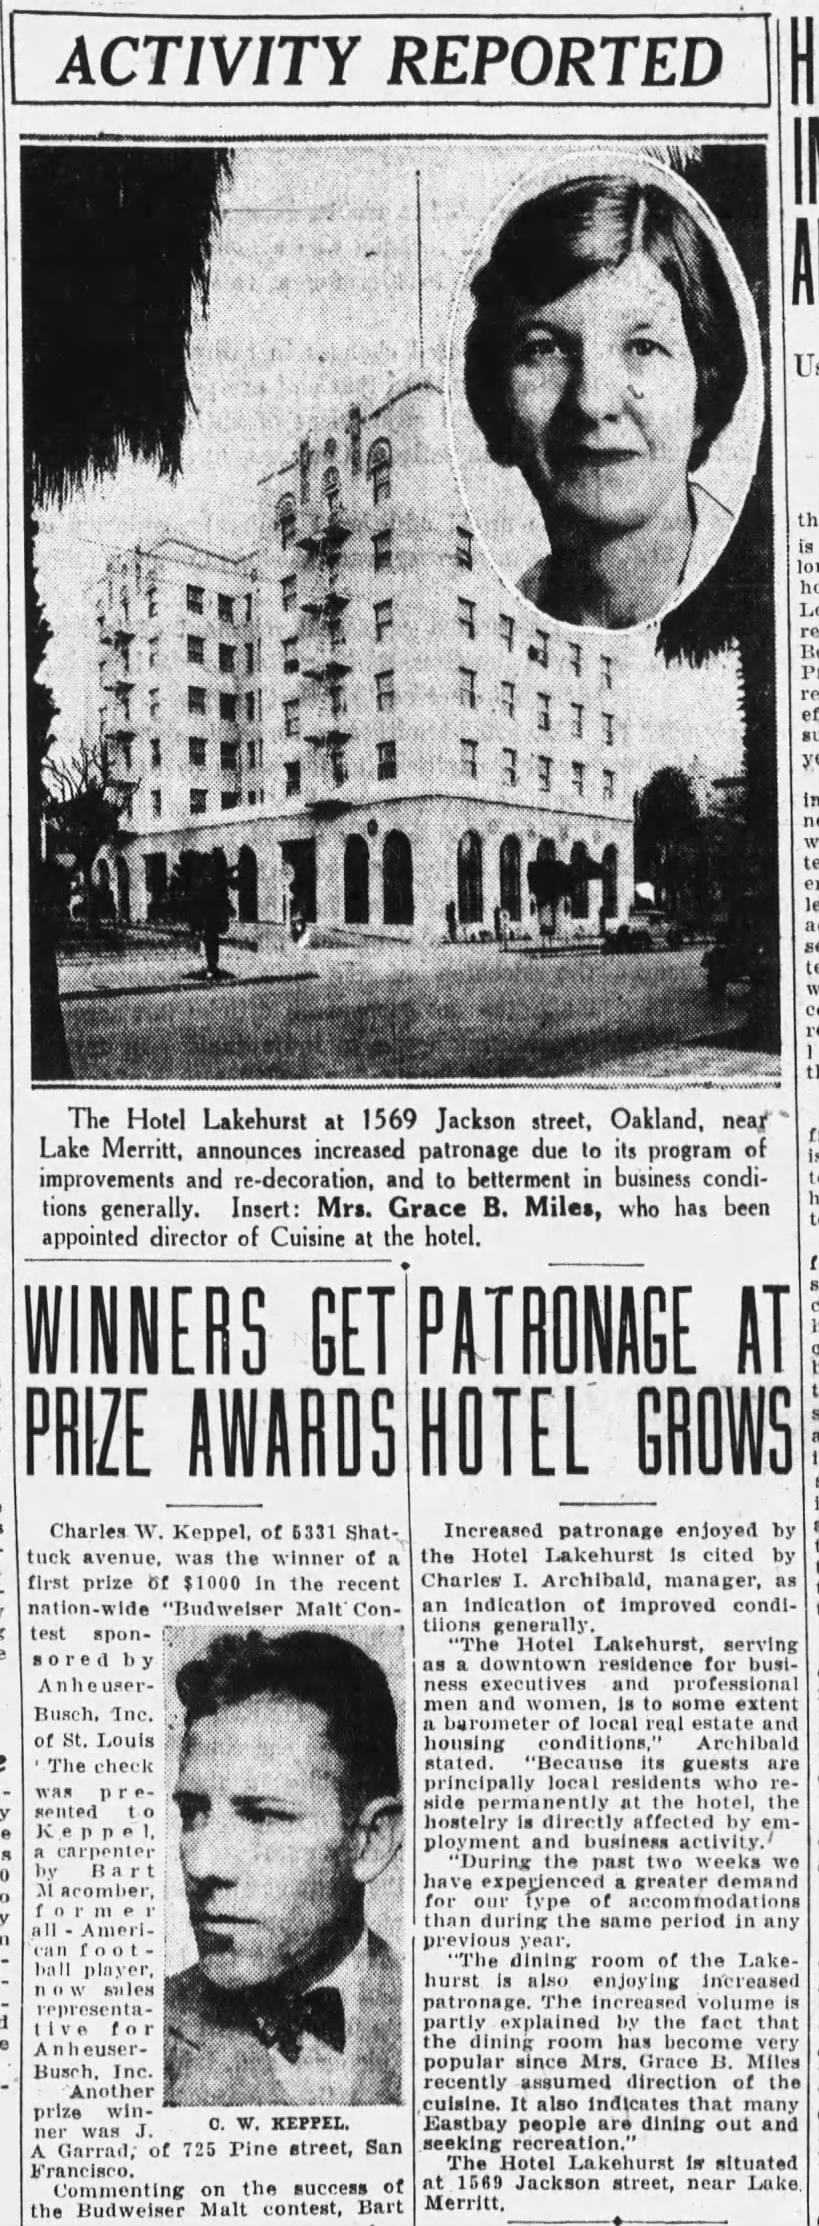 Hotel Lakehurst - increased patronage